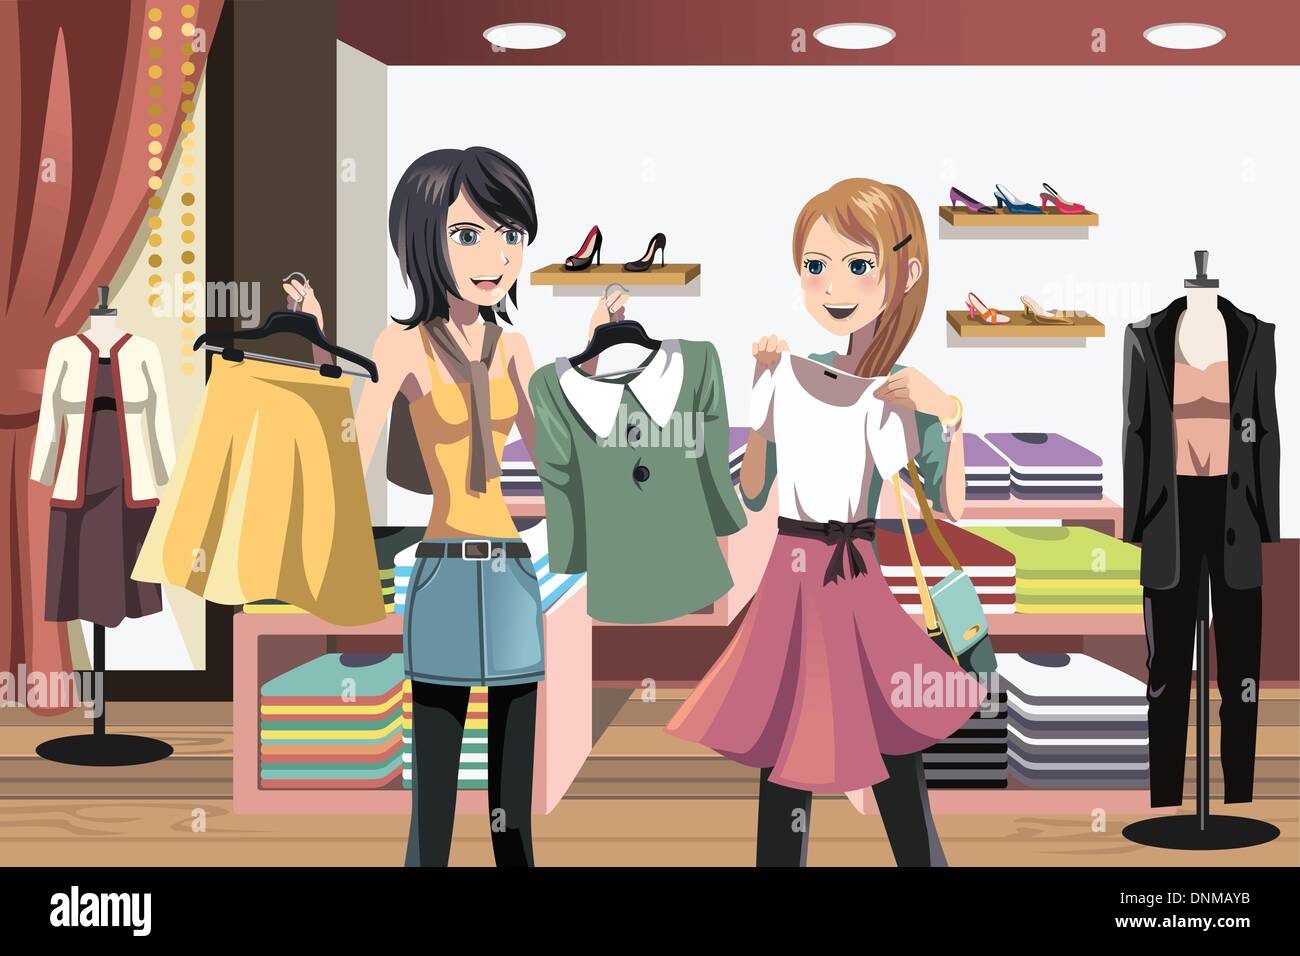 Eine Vektor-Illustration von Frauen in einem Bekleidungsgeschäft einkaufen Stock Vektor